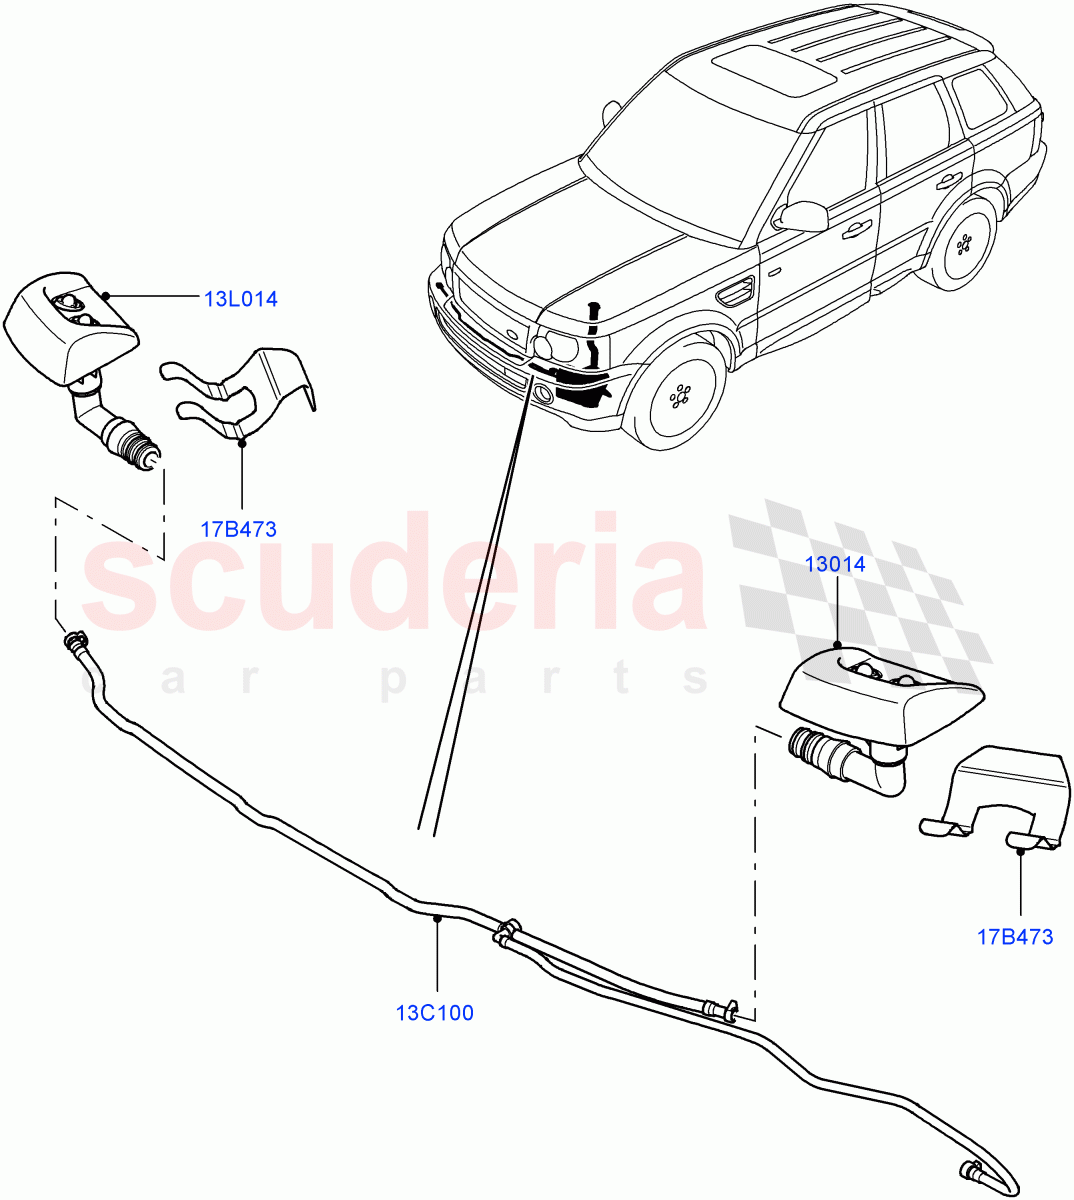 Headlamp Washer((V)TO9A999999) of Land Rover Land Rover Range Rover Sport (2005-2009) [3.6 V8 32V DOHC EFI Diesel]